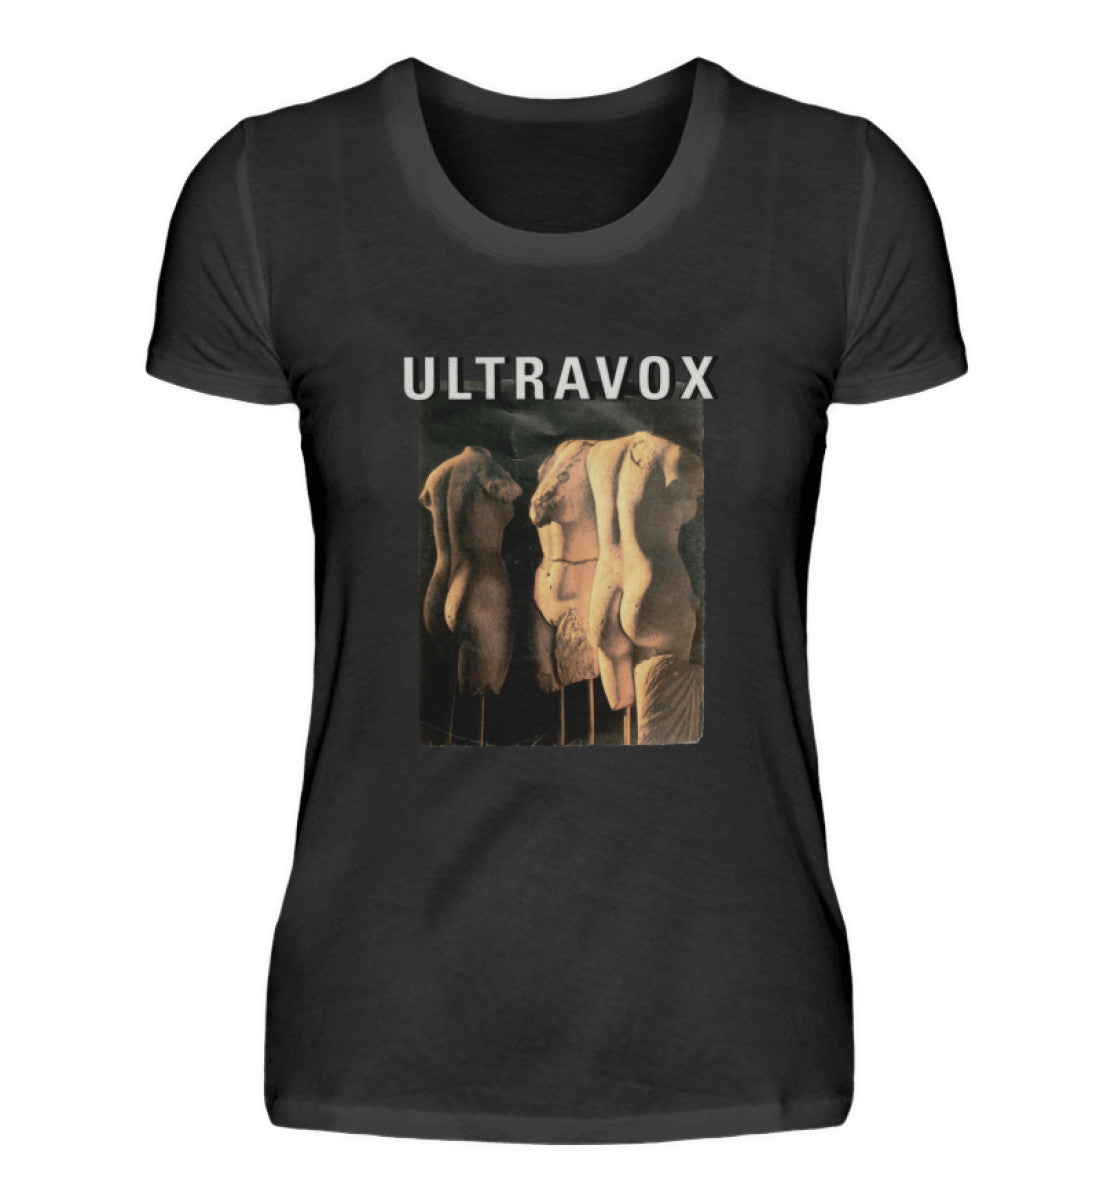 Ultravox T-Shirt Women